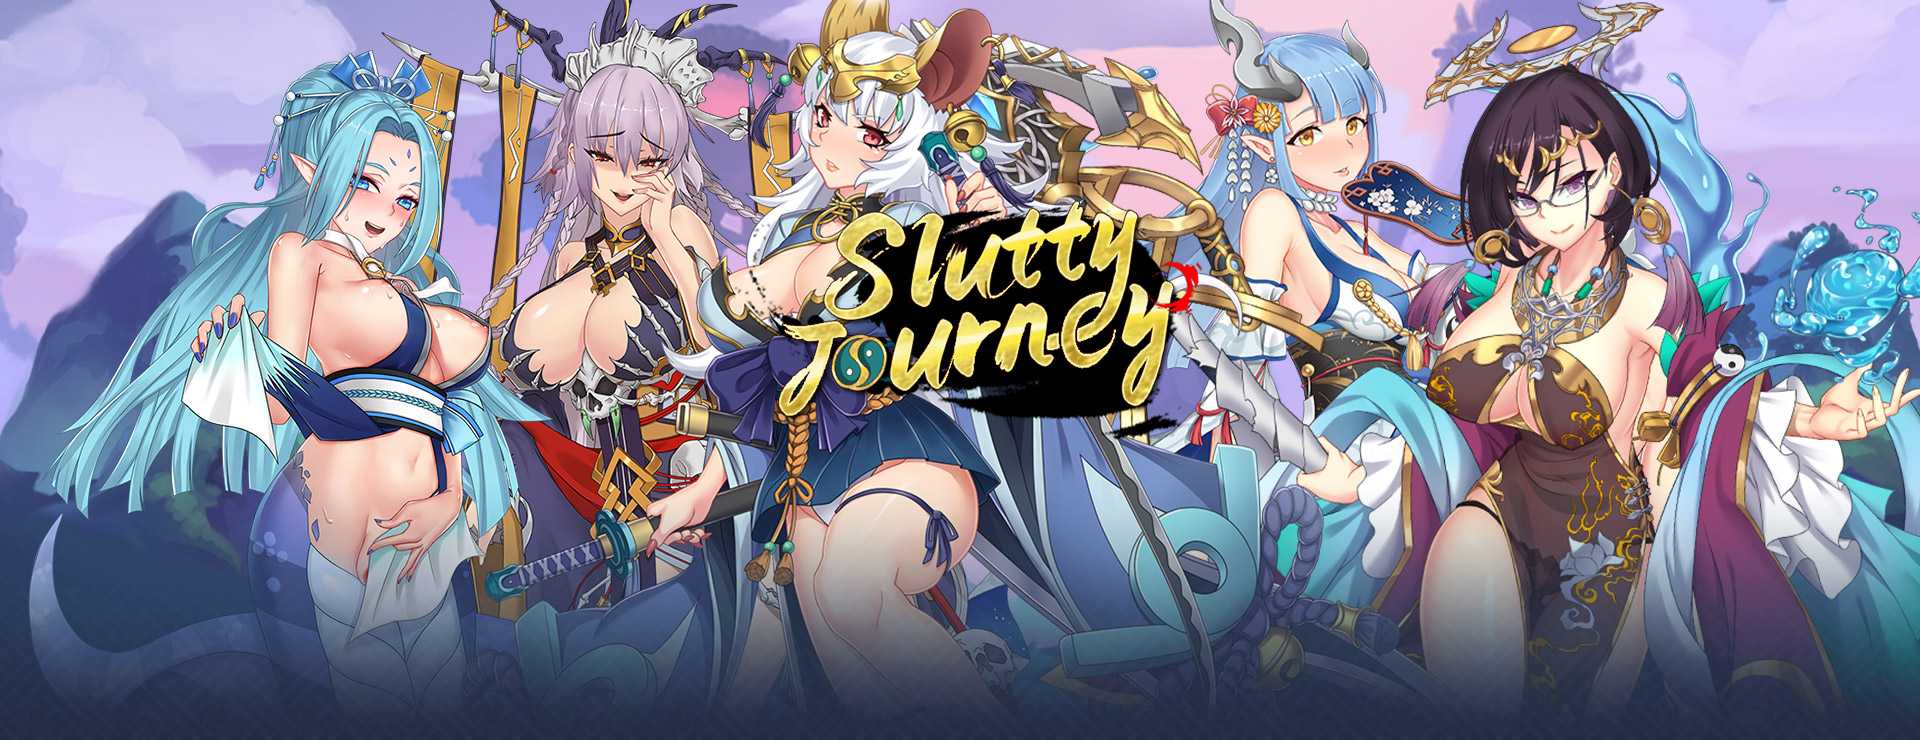 Slutty Journey - RPG Game